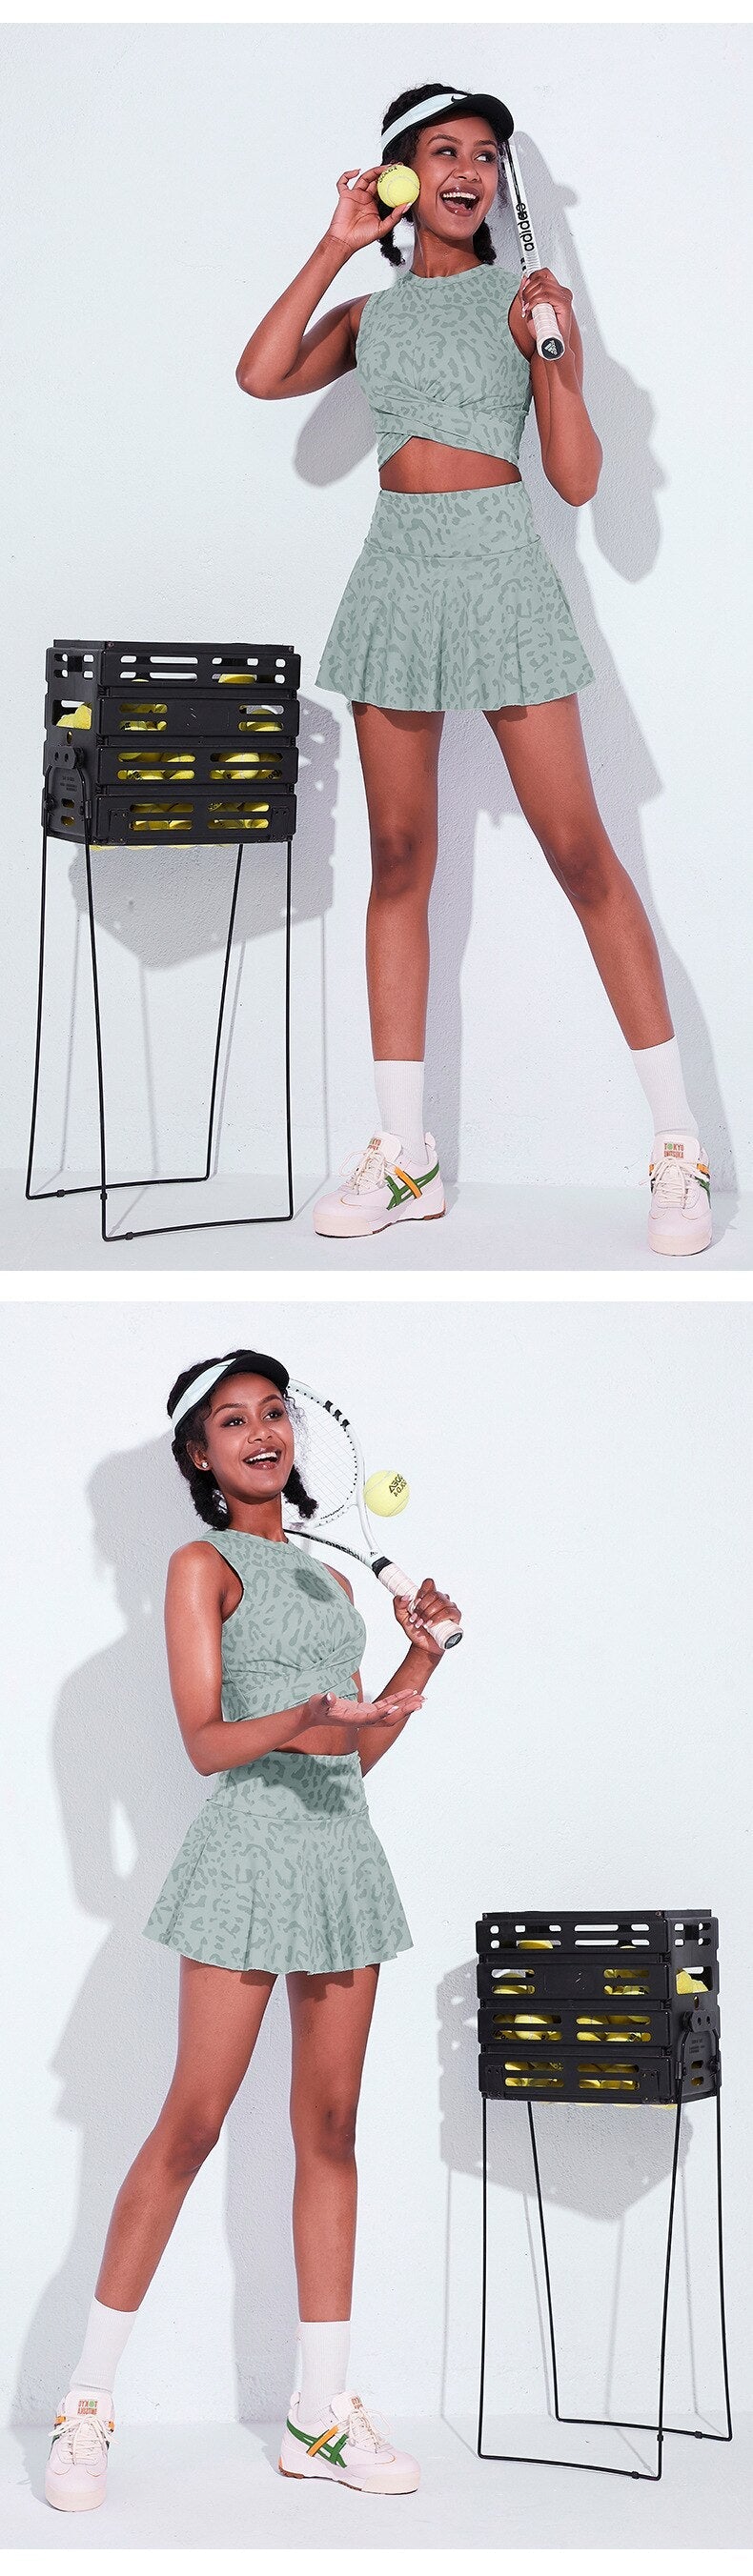 New Leopard Print Tennis Skirt Set Running Sports Skirt Half-length Sports Skirt Badminton Skirt Skort Women Tennis Dress - Linions